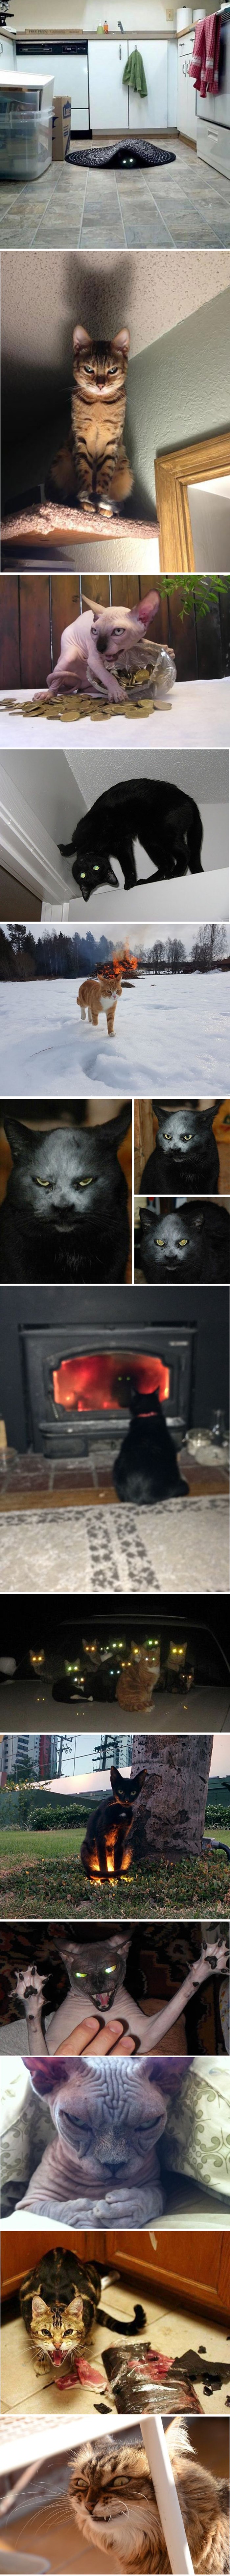 Trinaest fotografija koje dokazuju da svaka maca ima nešto "demonsko" u sebi!